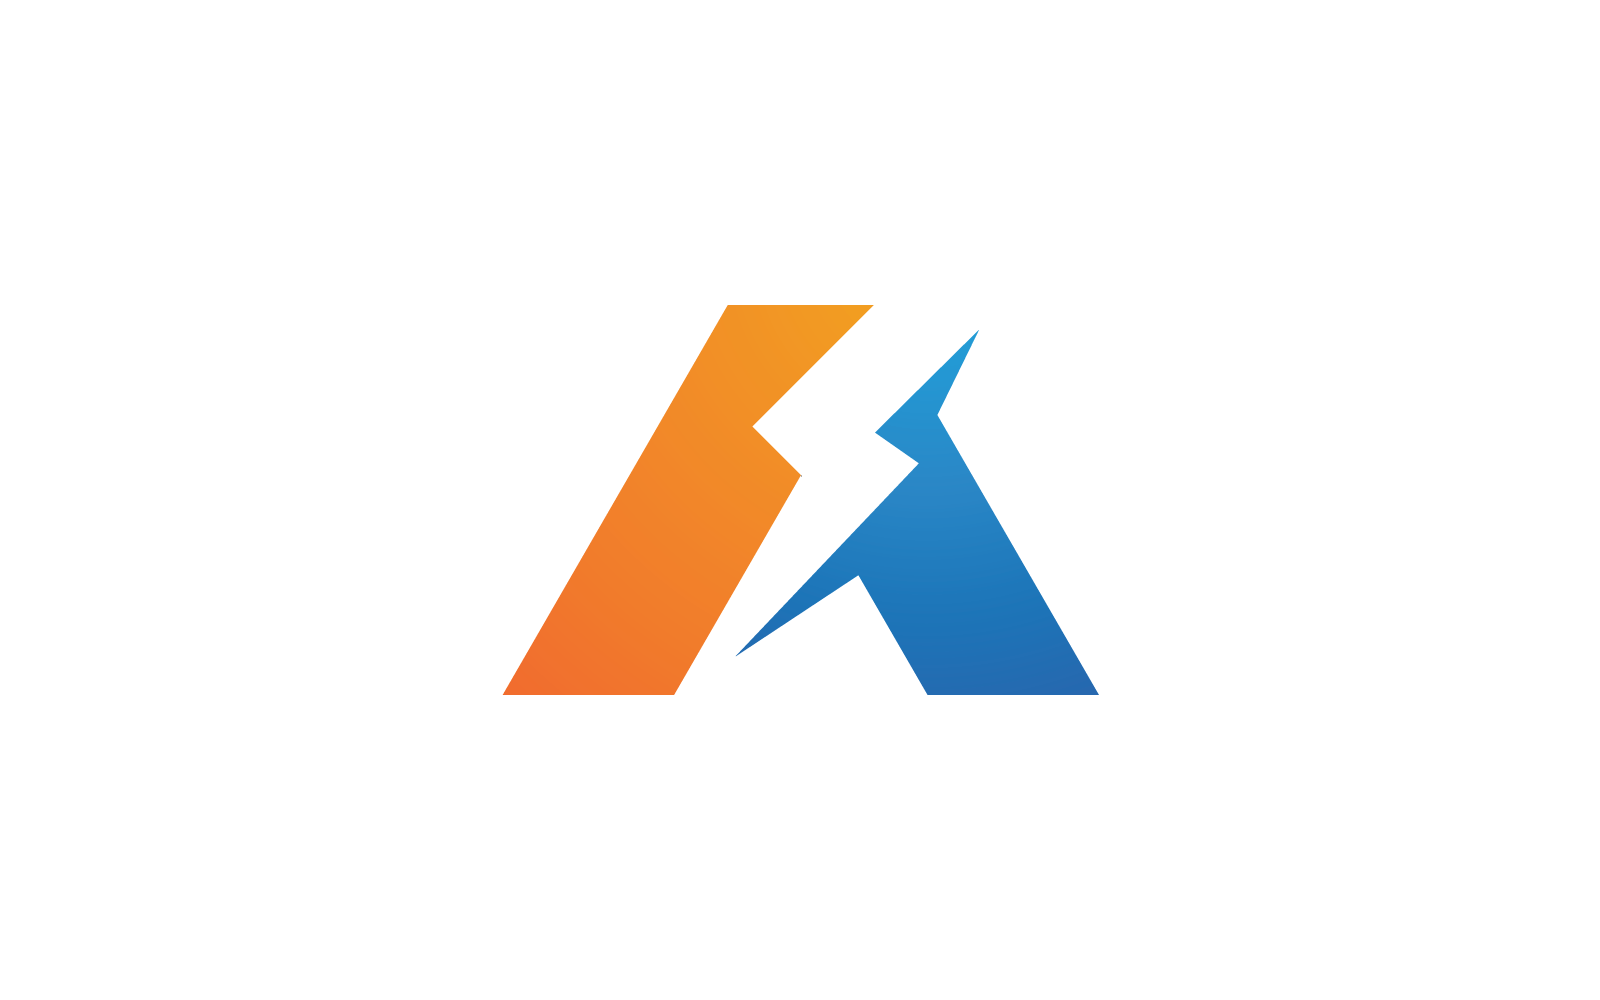 Power lightning illustration logo flat design vector